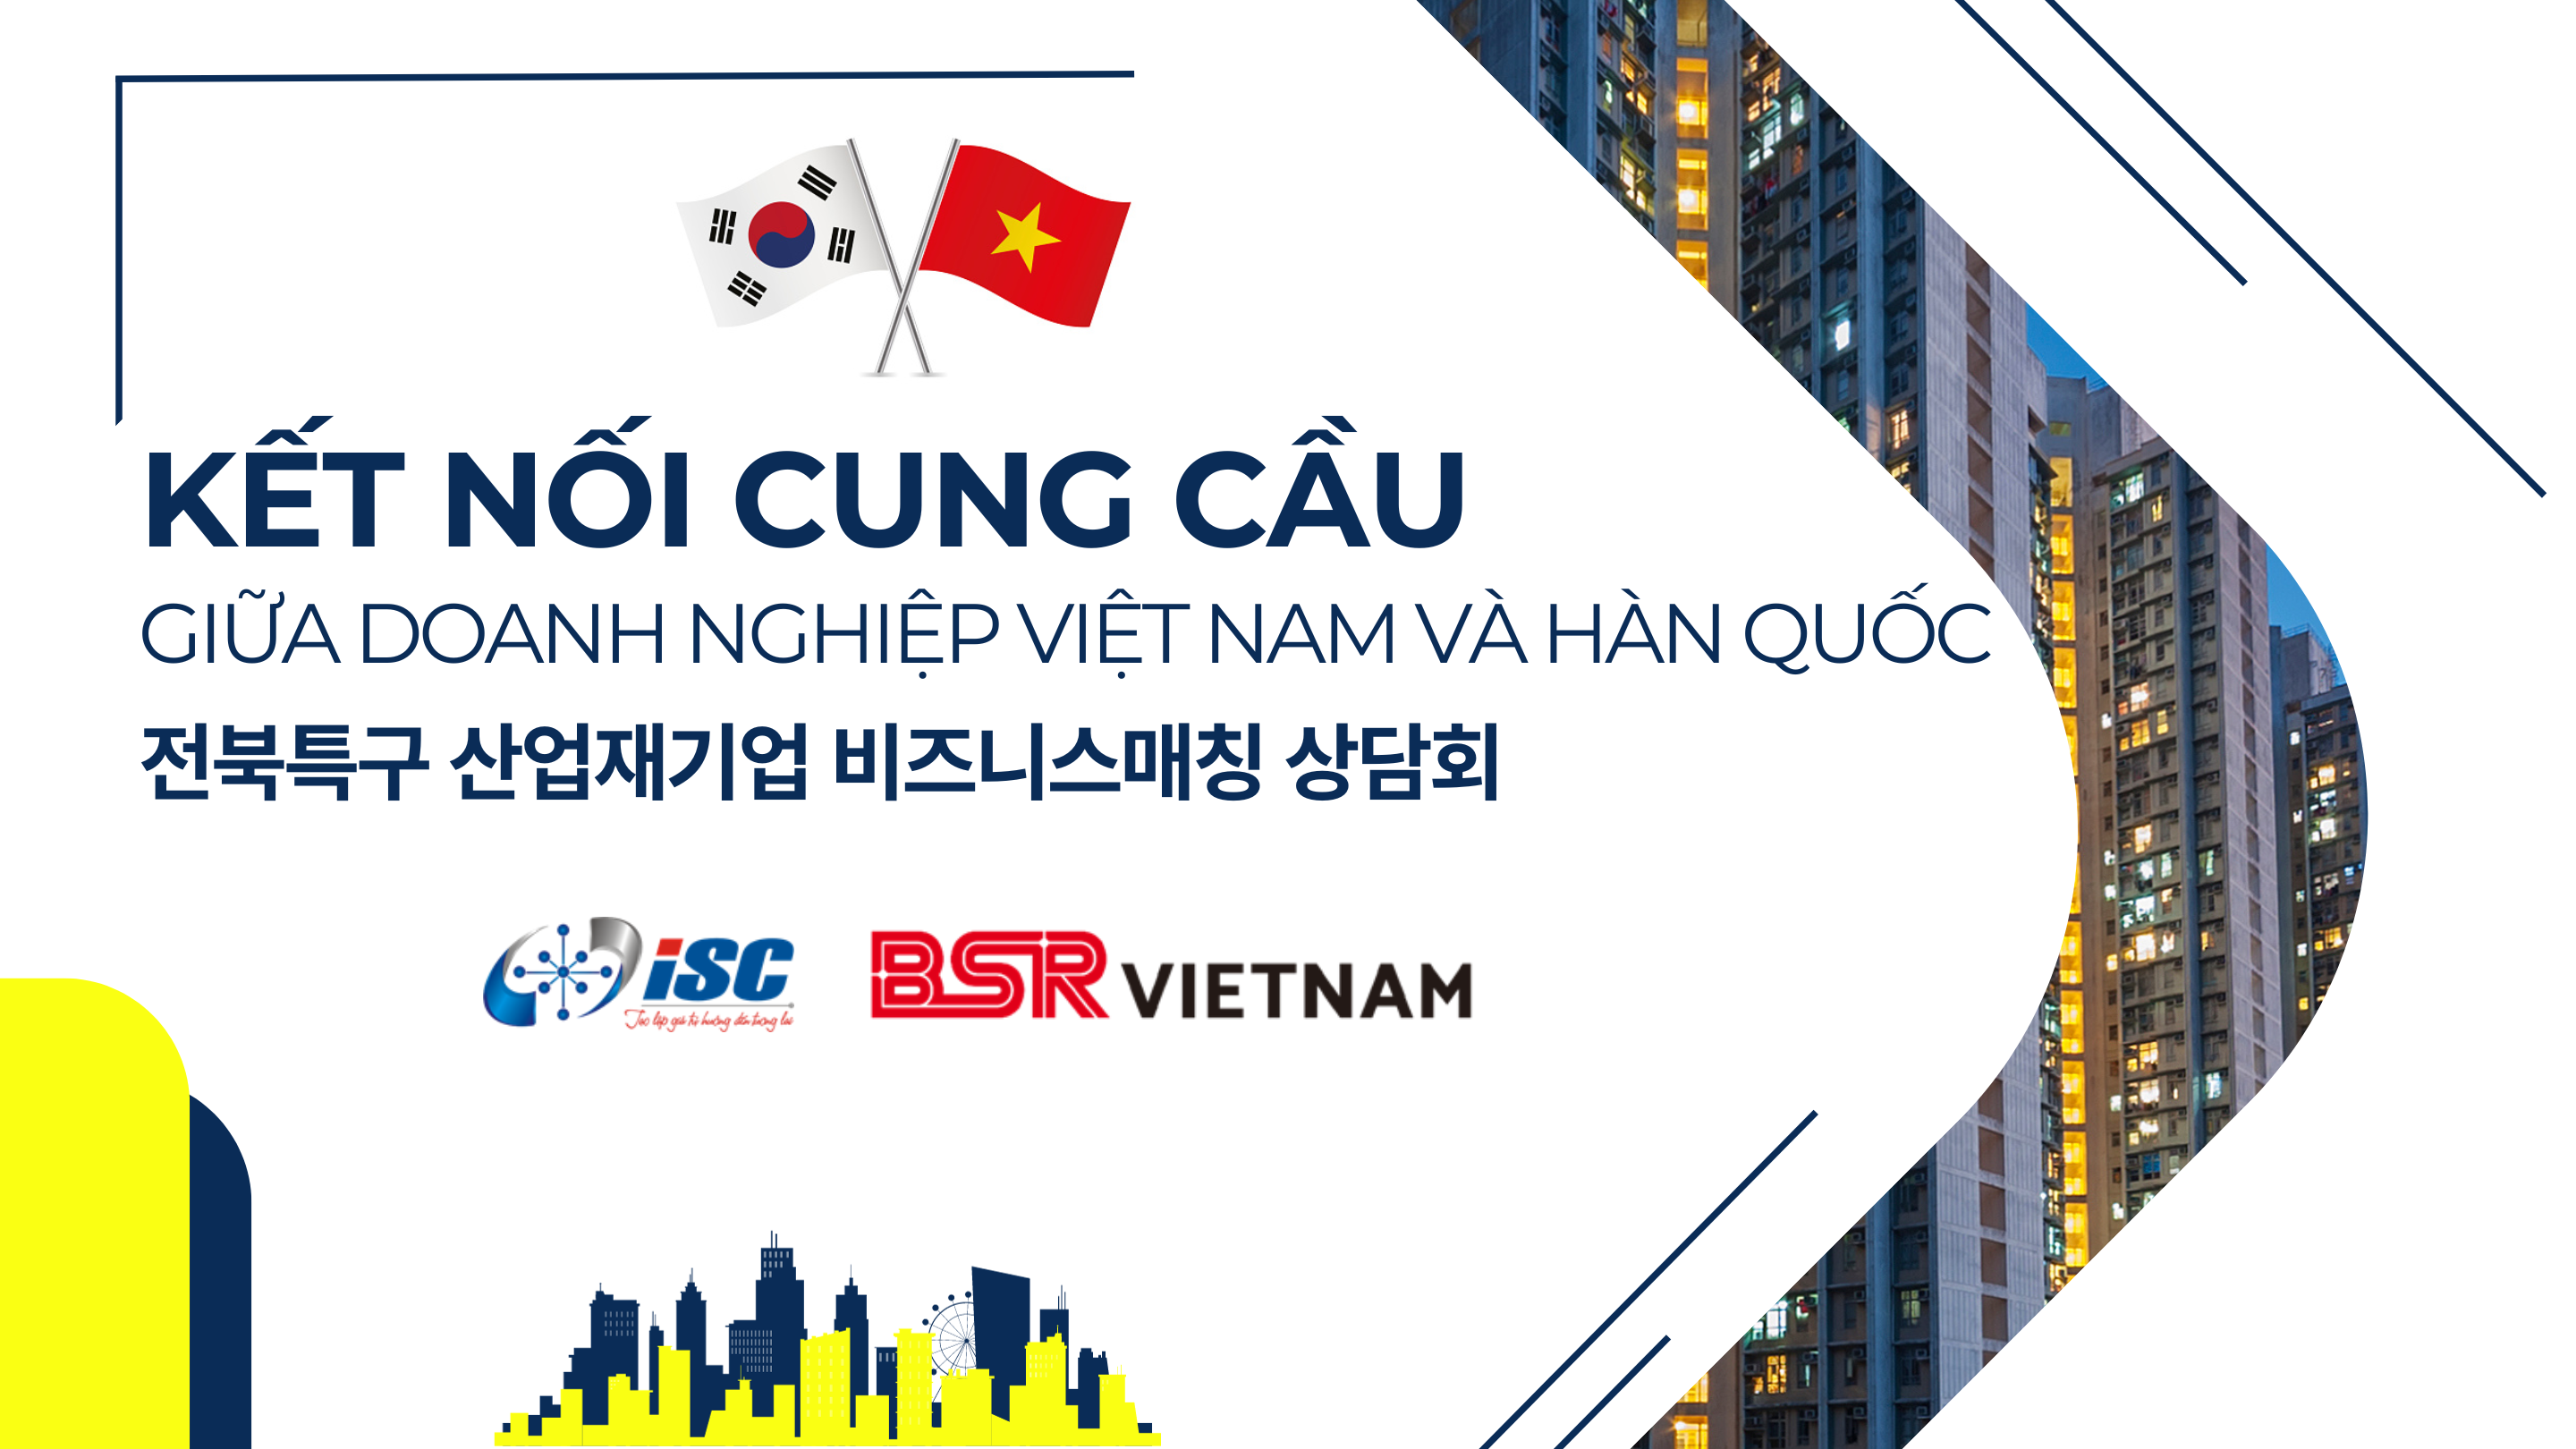 Sự kiện Kết nối cung cầu công nghệ giữa doanh nghiệp Việt Nam và Hàn Quốc